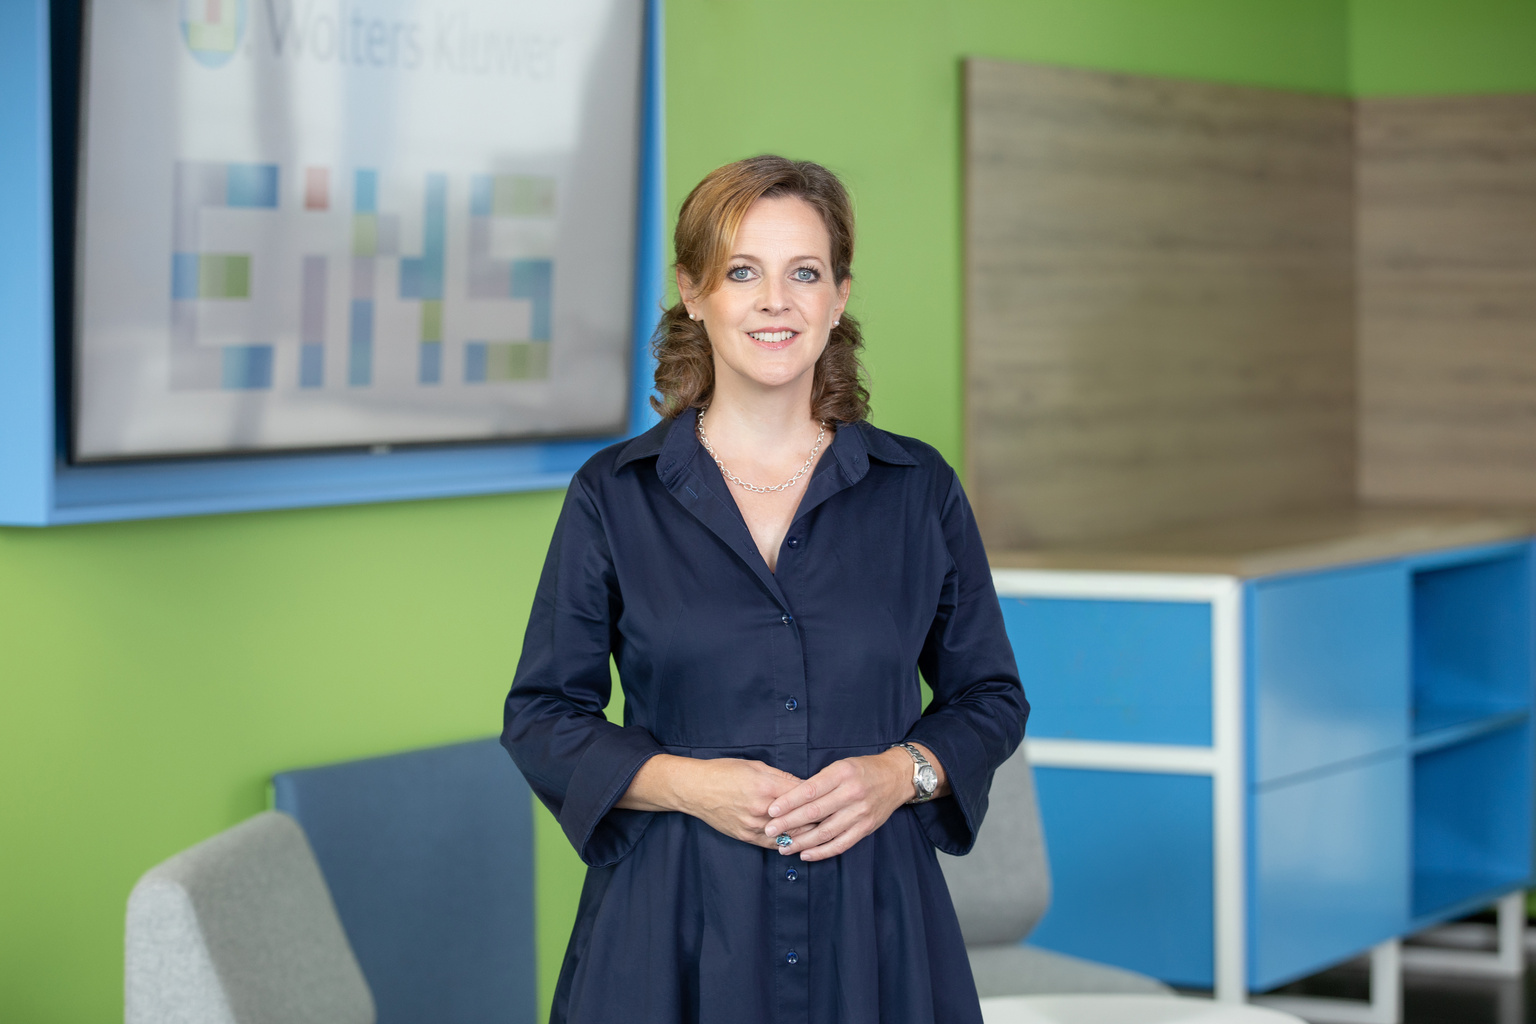 Verein Deutsche Fachpresse: Stephanie Walter in den Vorstand gewählt